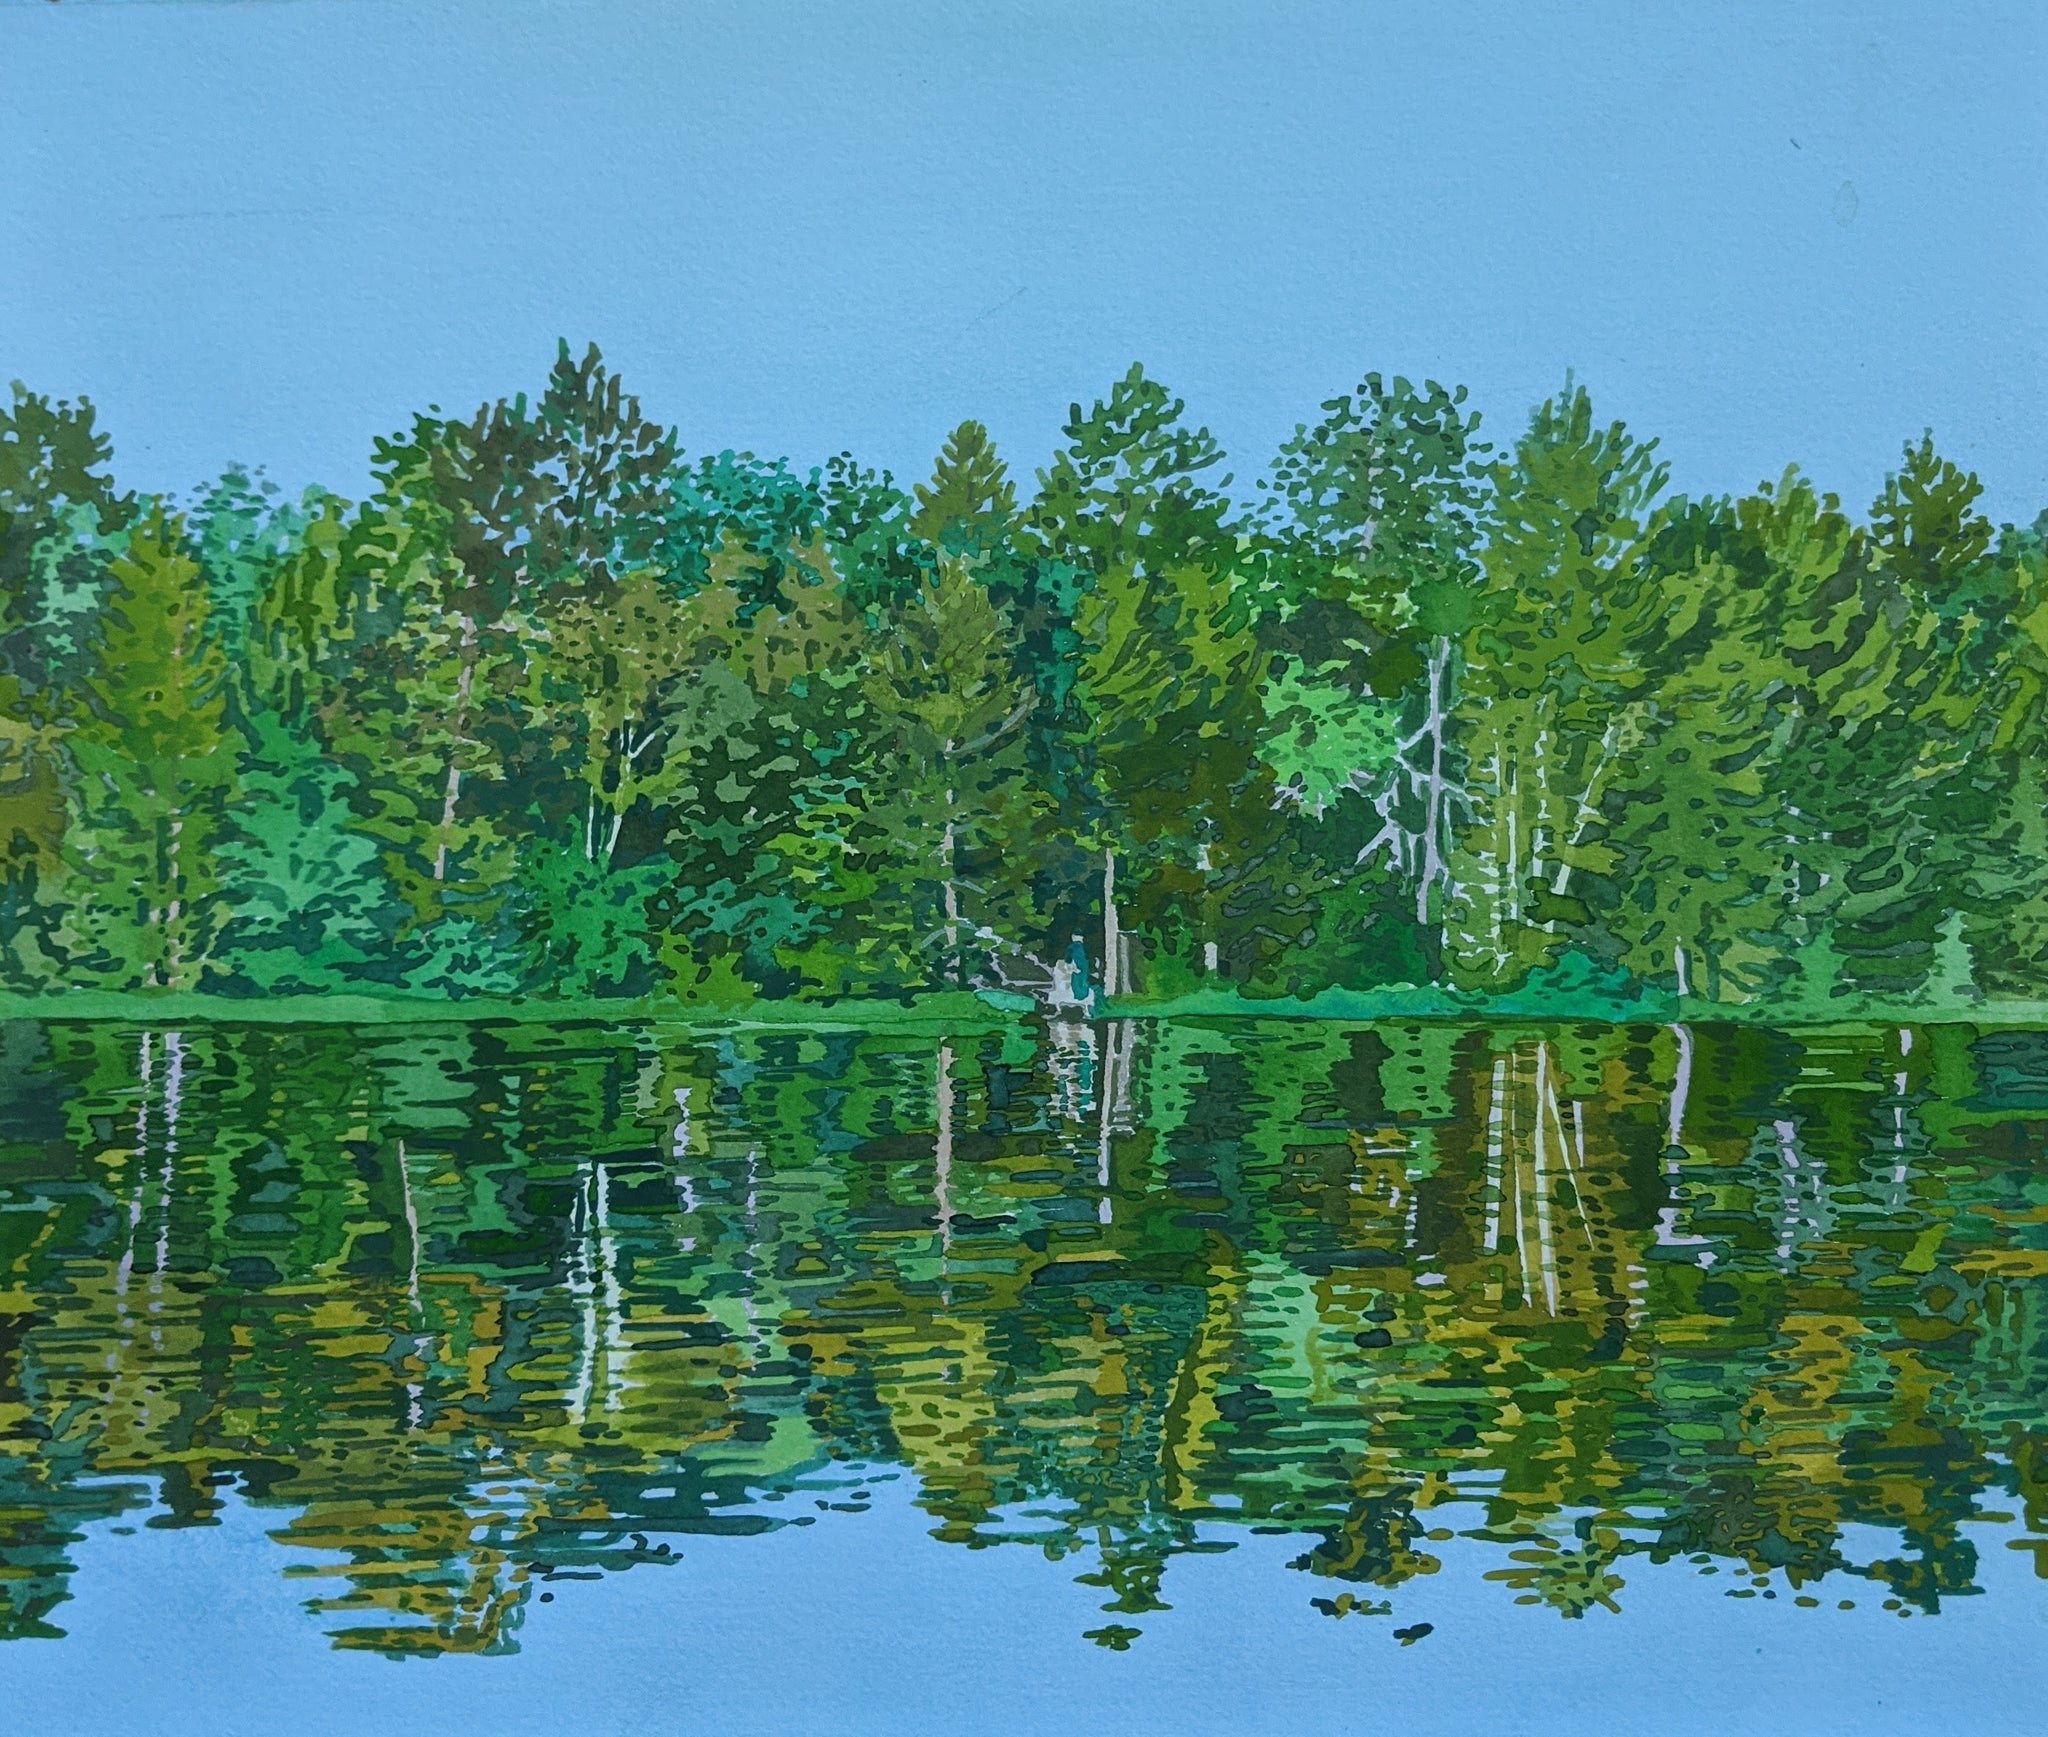 Breehan James, "Lake"